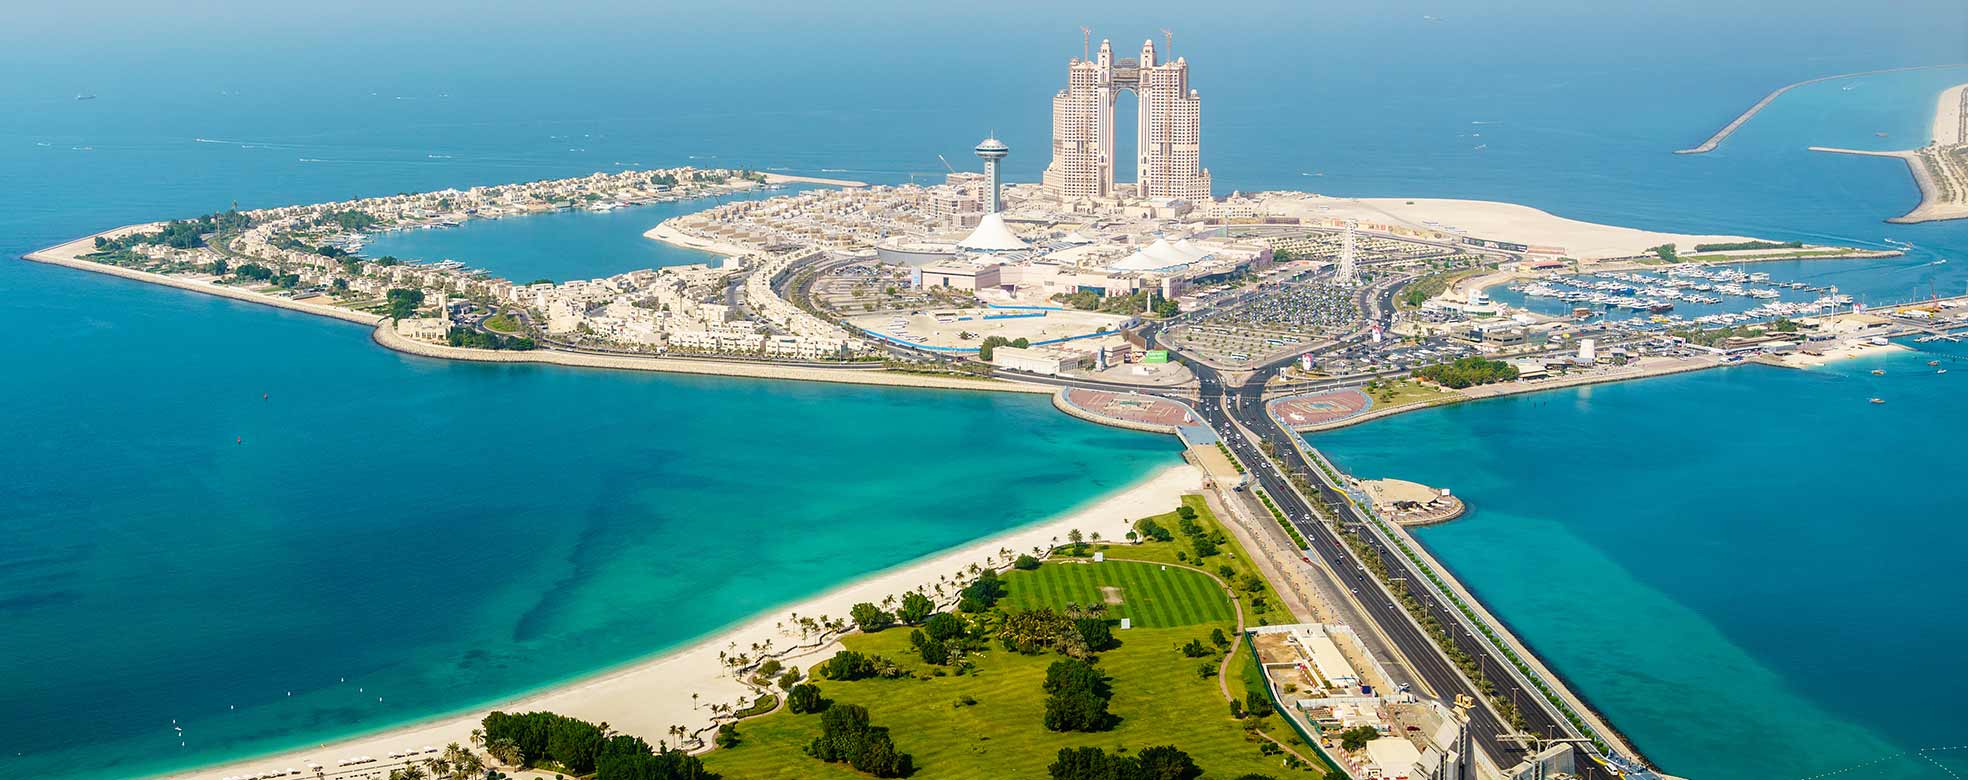 Abu Dhabi in den Vereinigten Arabischen Emiraten